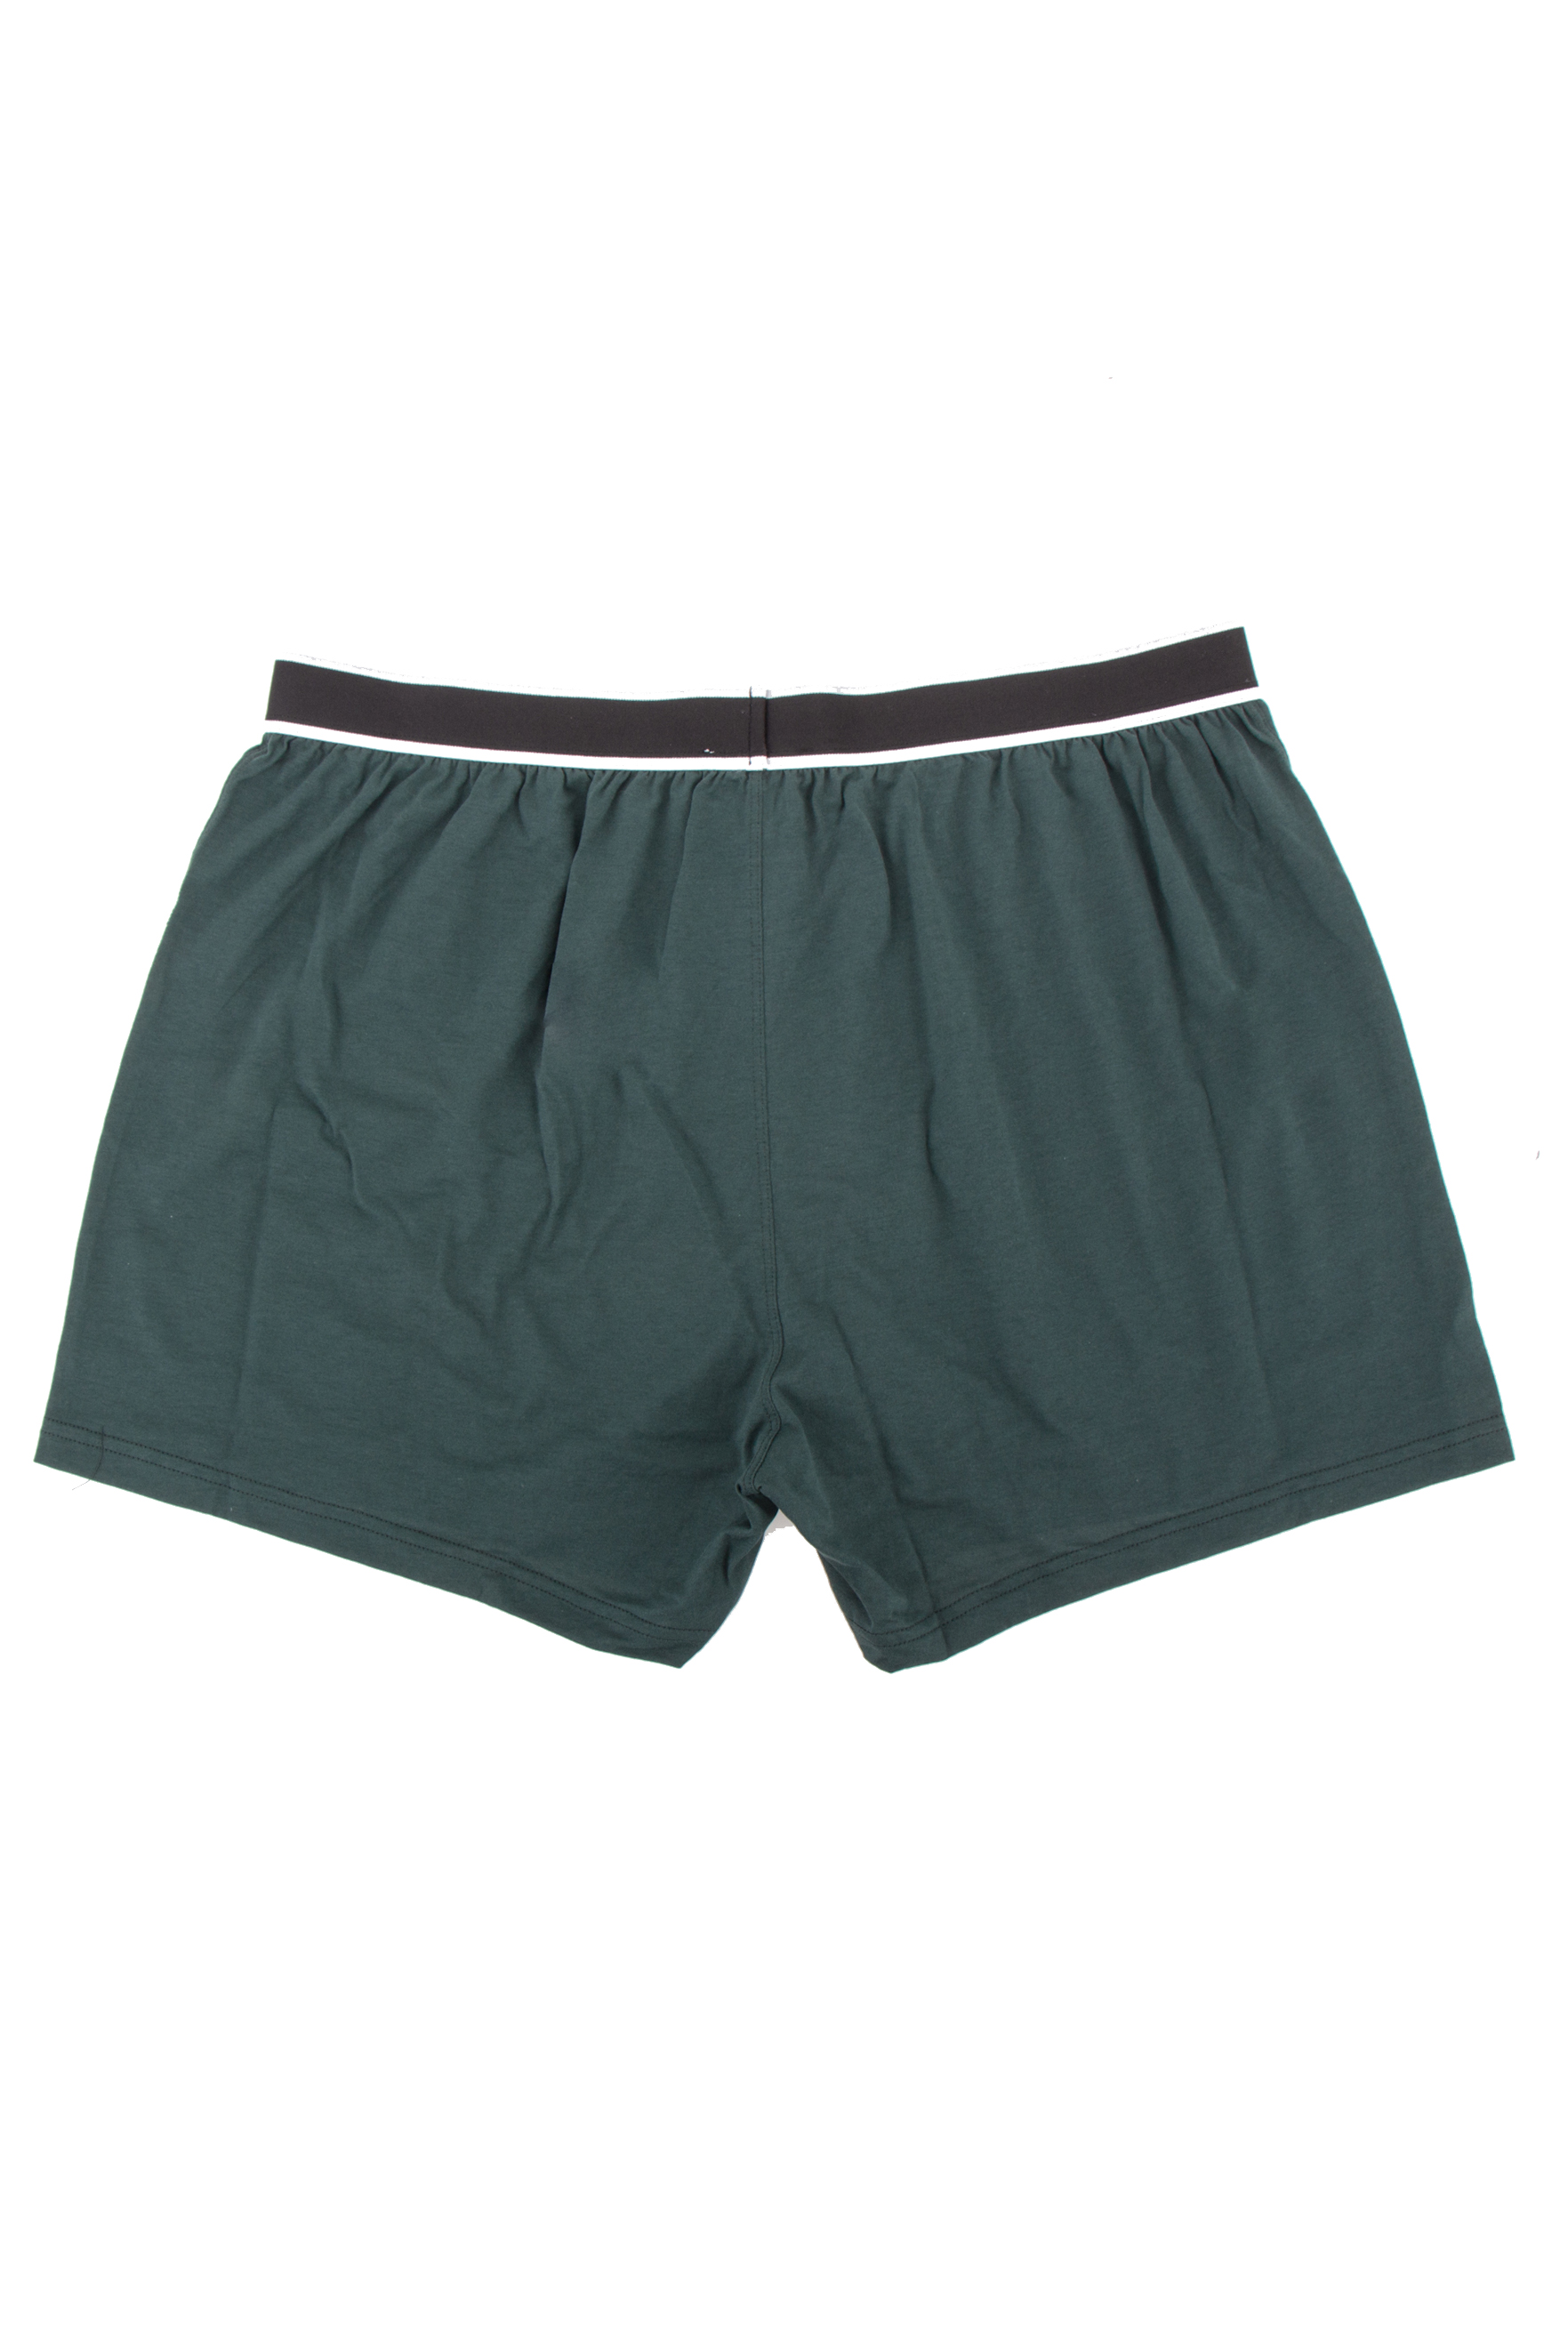 BALMAIN Cotton Boxer Shorts | Boxershorts | Underwear | Underwear ...